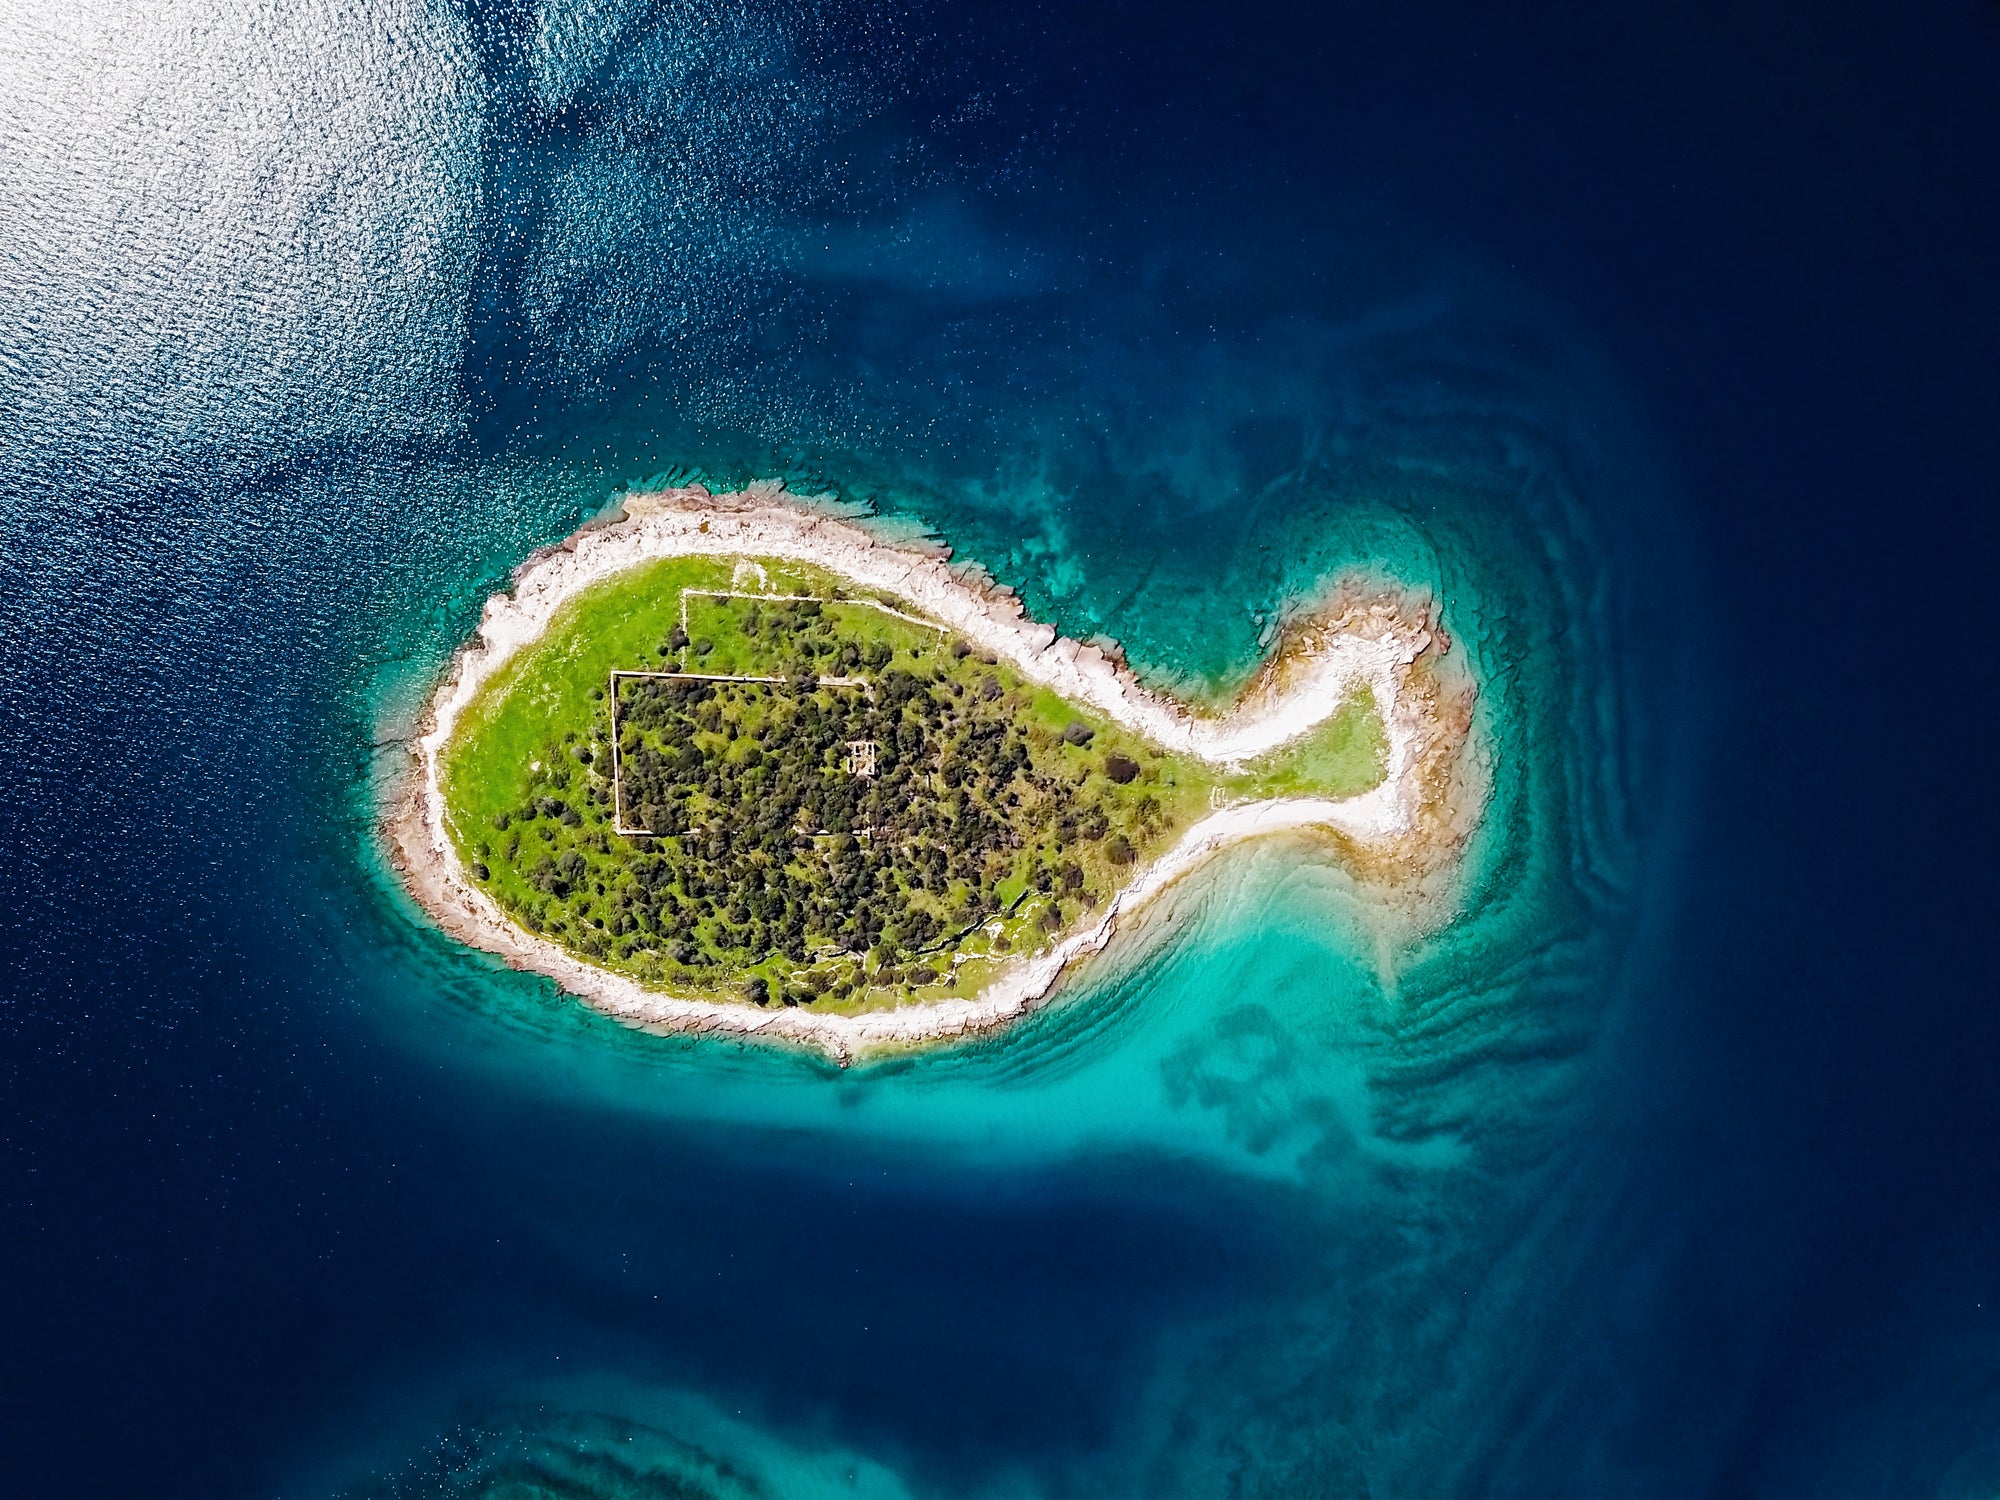 Brijuni’s Gaz island is shaped like a fish